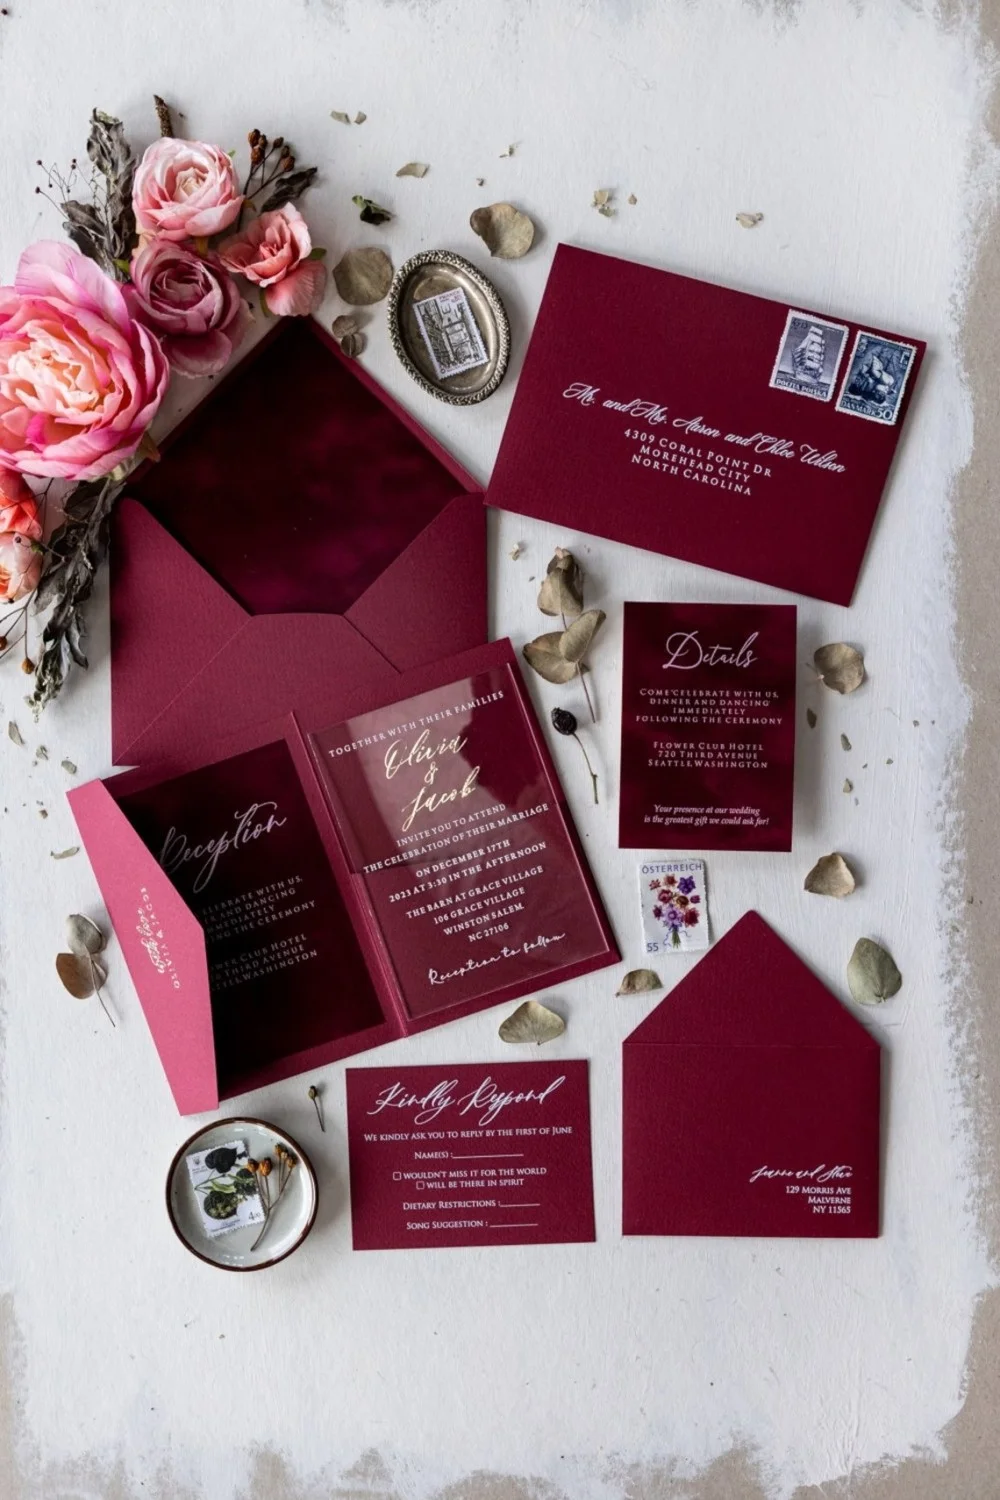 Vista frontal de la invitación de boda con diseño acrílico.